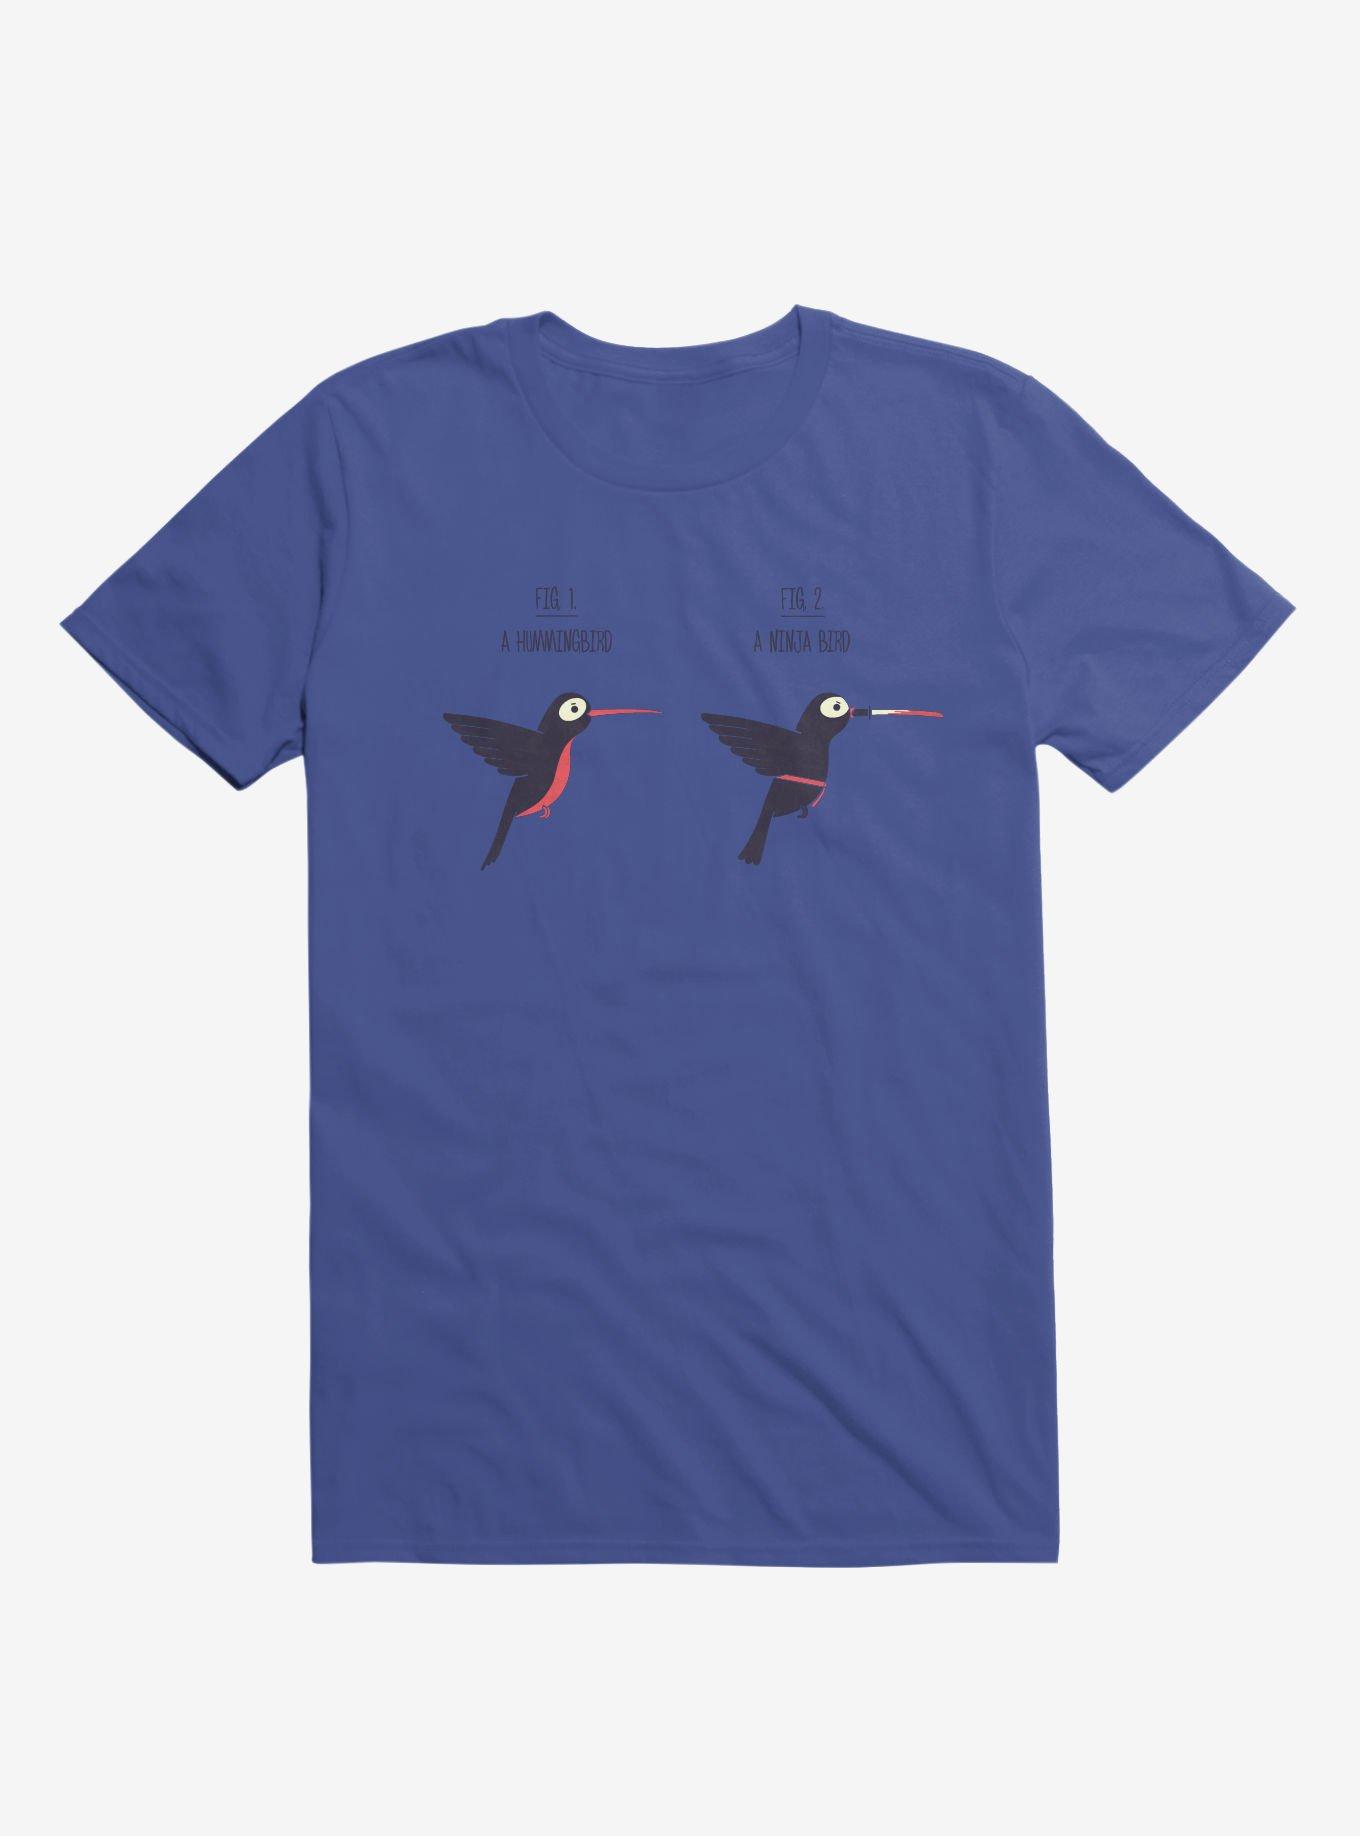 Know Your Birds A Hummingbird Or Ninja Bird Royal Blue T-Shirt, , hi-res